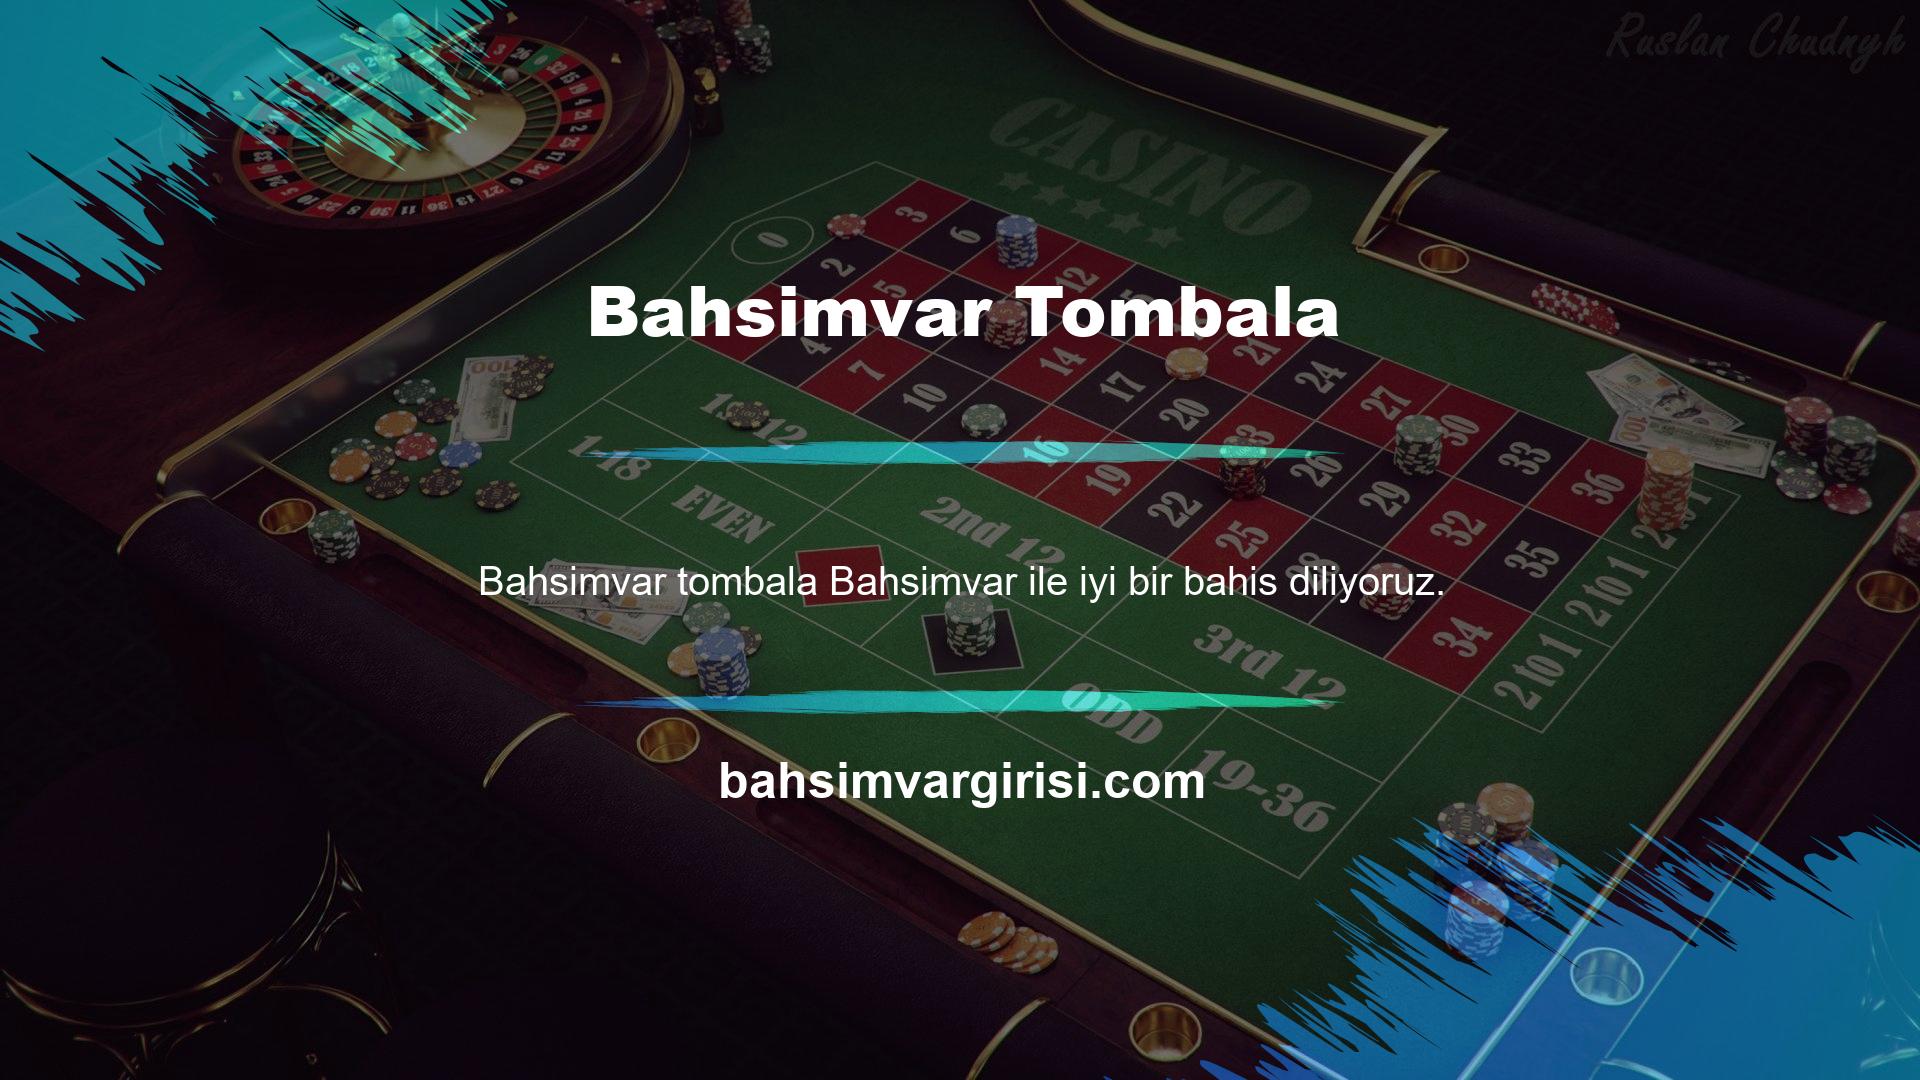 Türkiye'nin en çok kazandıran bahis sitelerinden biri olan Bahsimvar hoş geldiniz